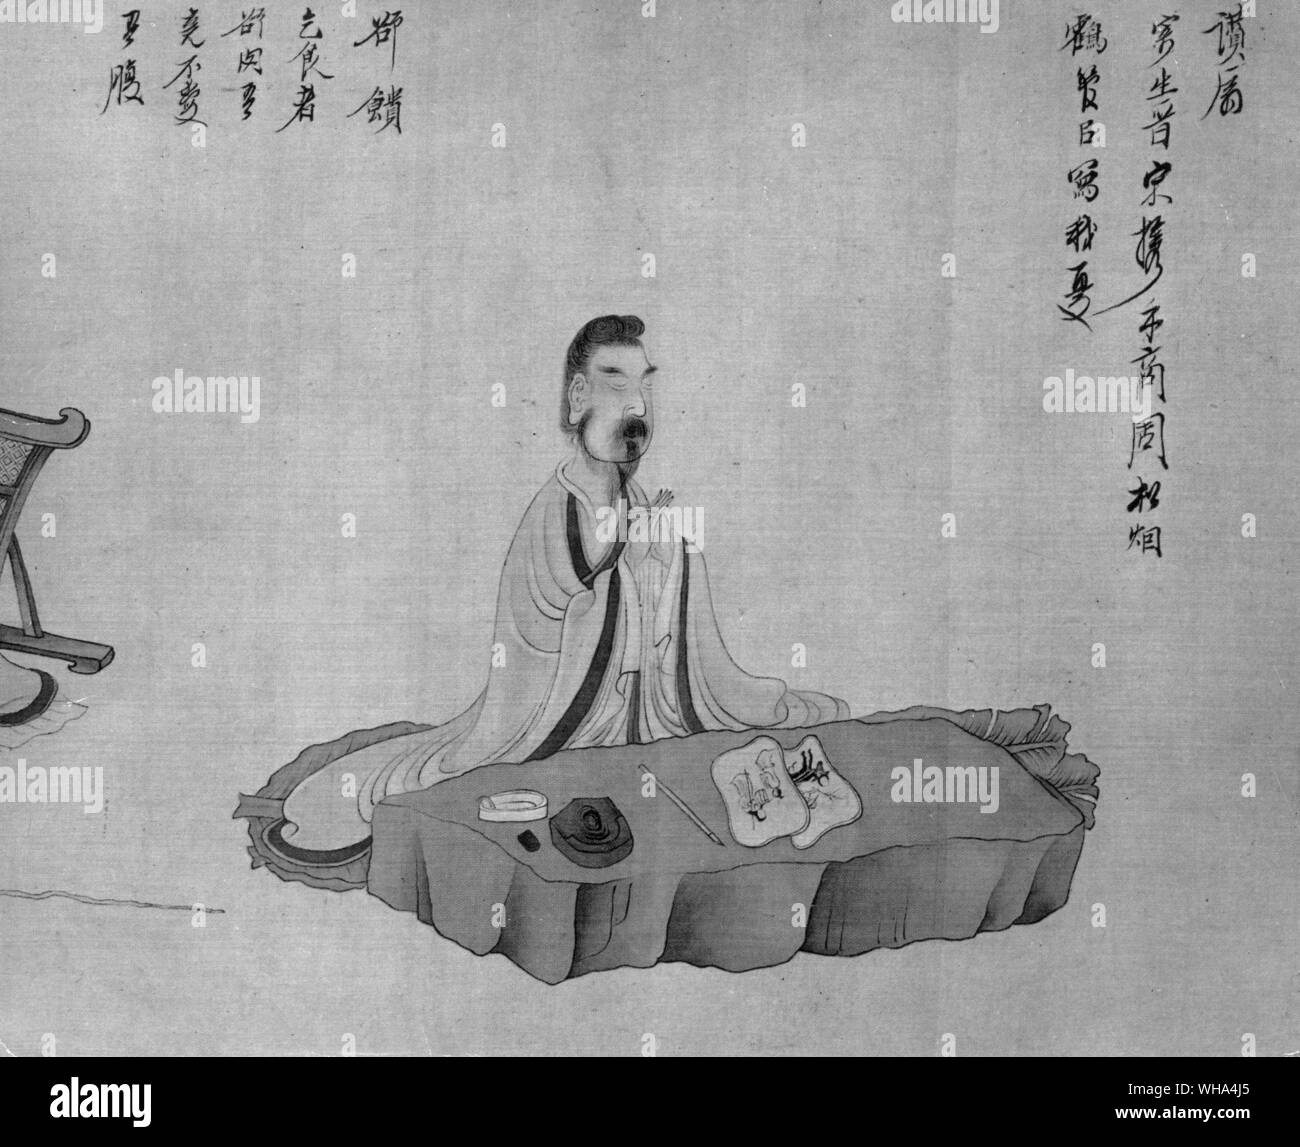 Hung Chen Shou le poète T'ao Yuan Ming méditant du rouleau horizontal de scènes de la vie de T'ao Yuan Ming en 1650. Encre et couleurs légères sur soie. . Banque D'Images